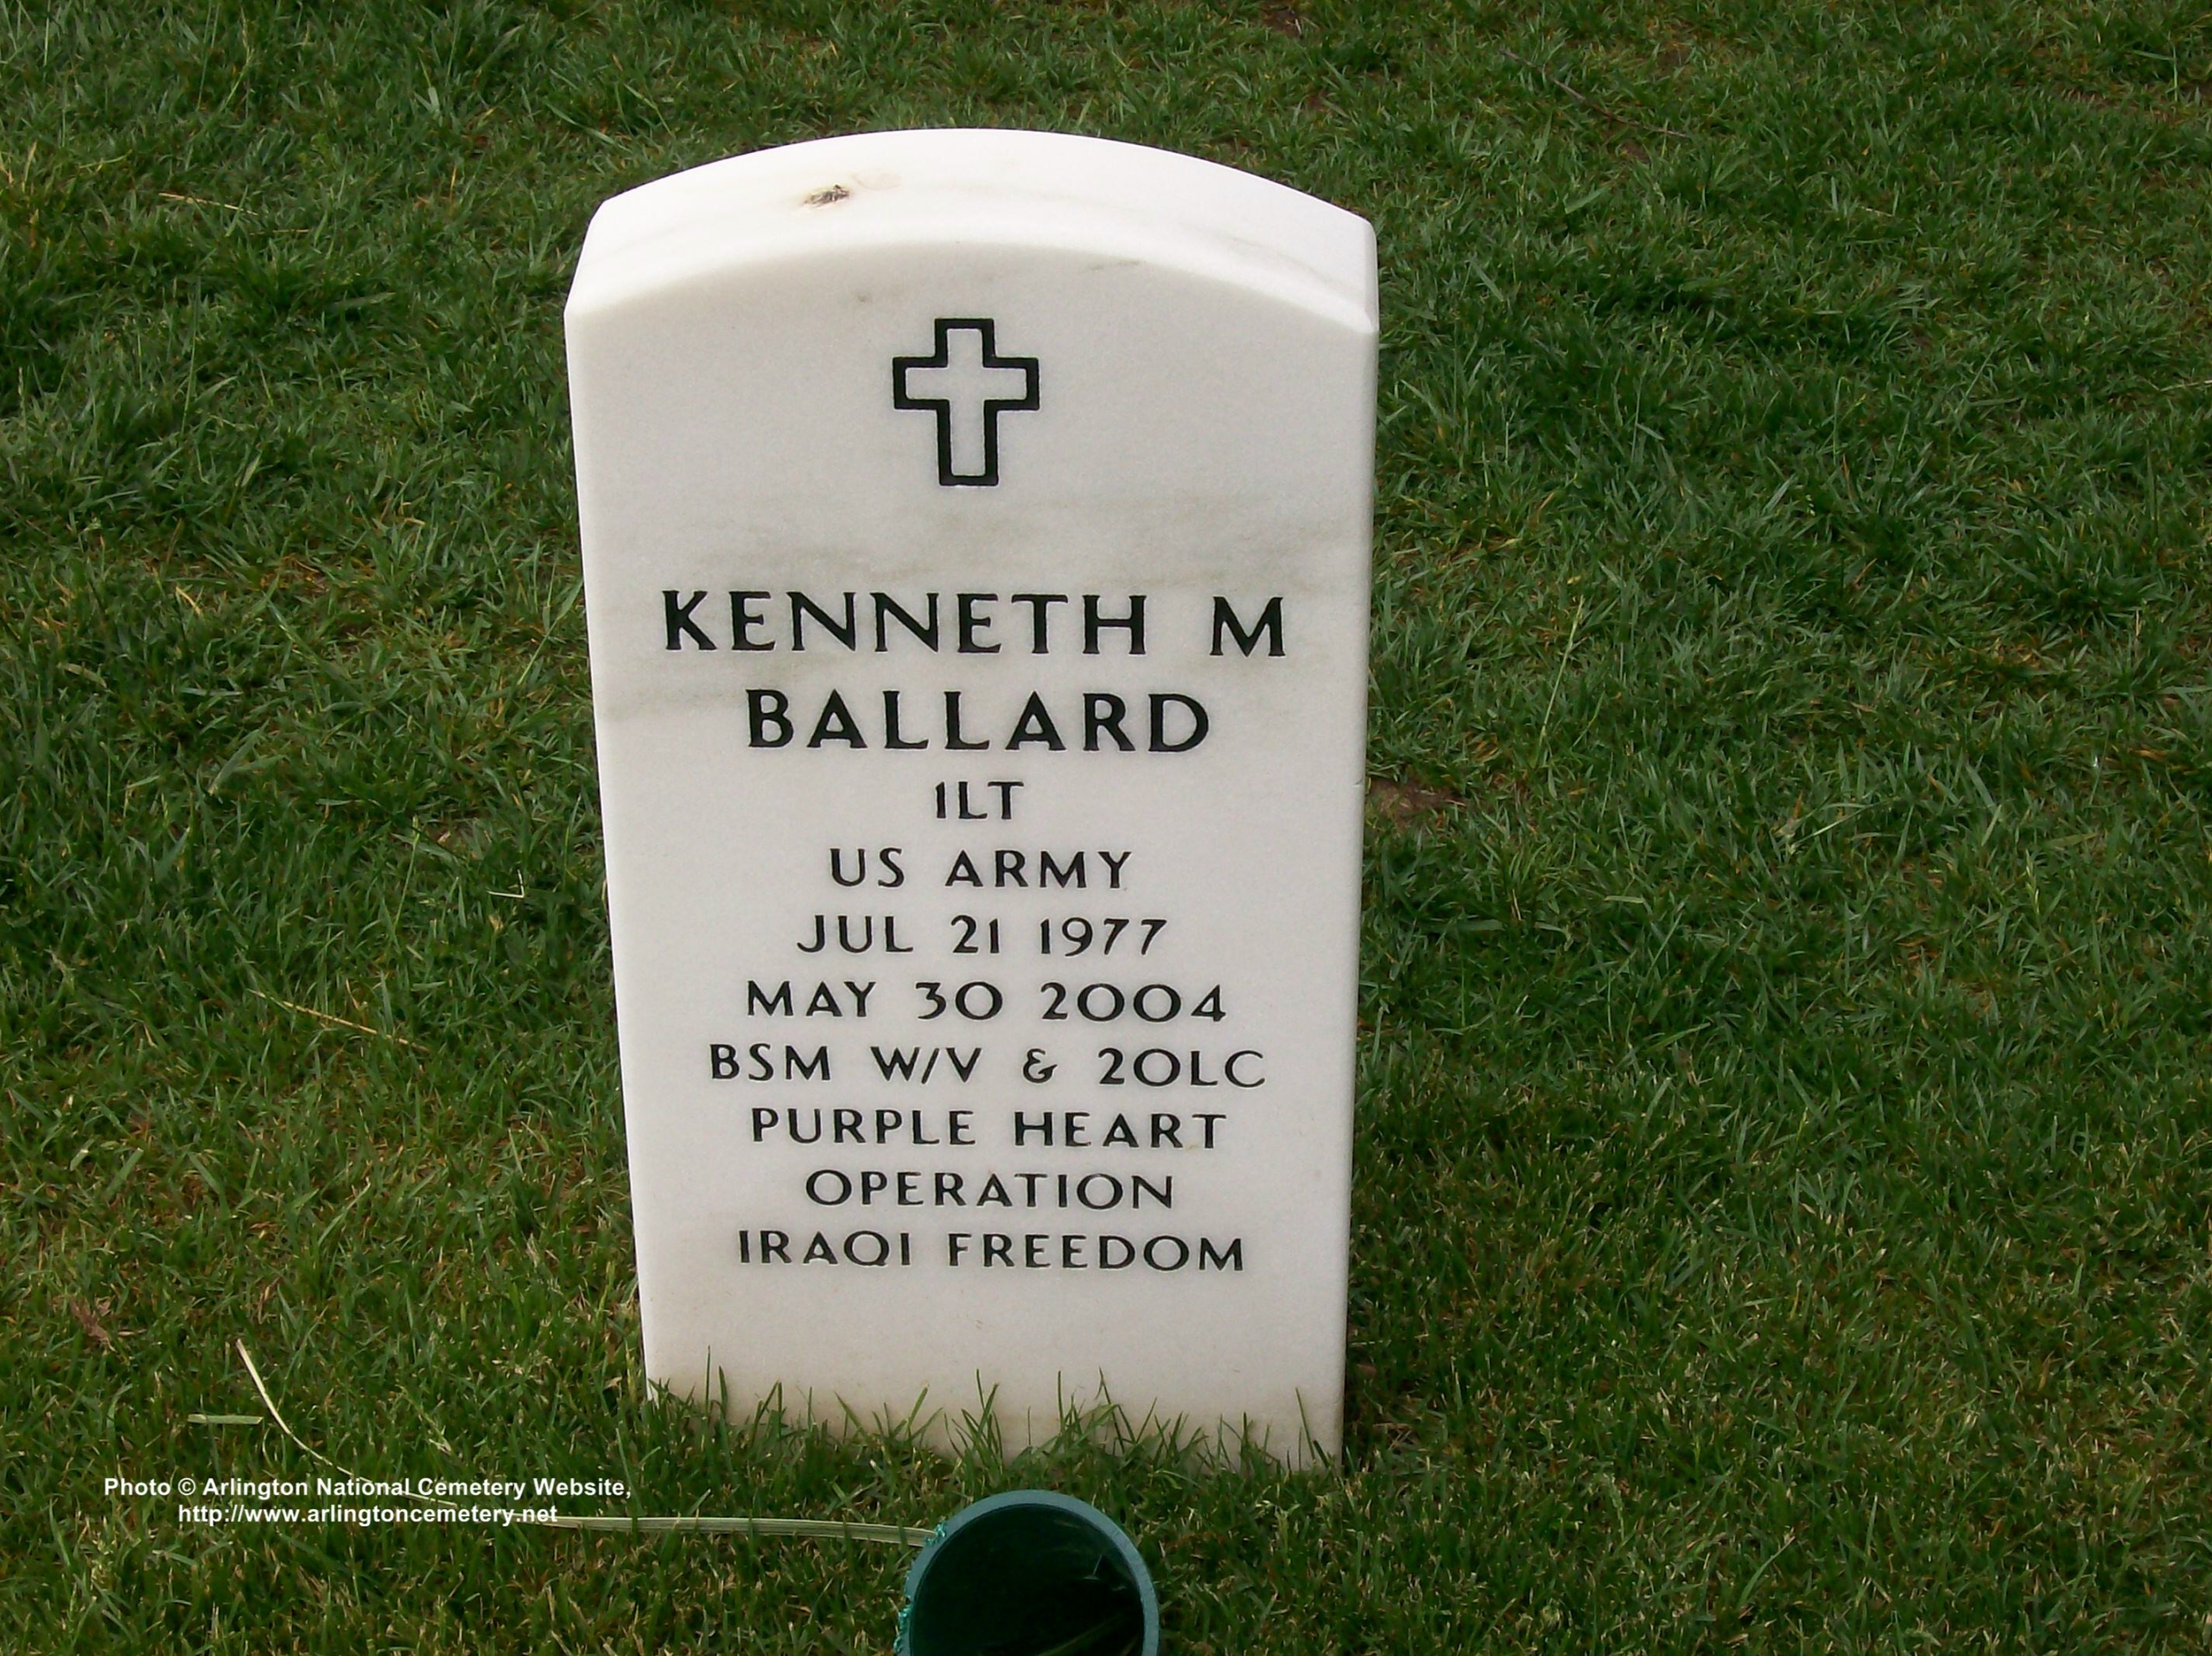 kmballard-gravesite-photo-may-2008-001